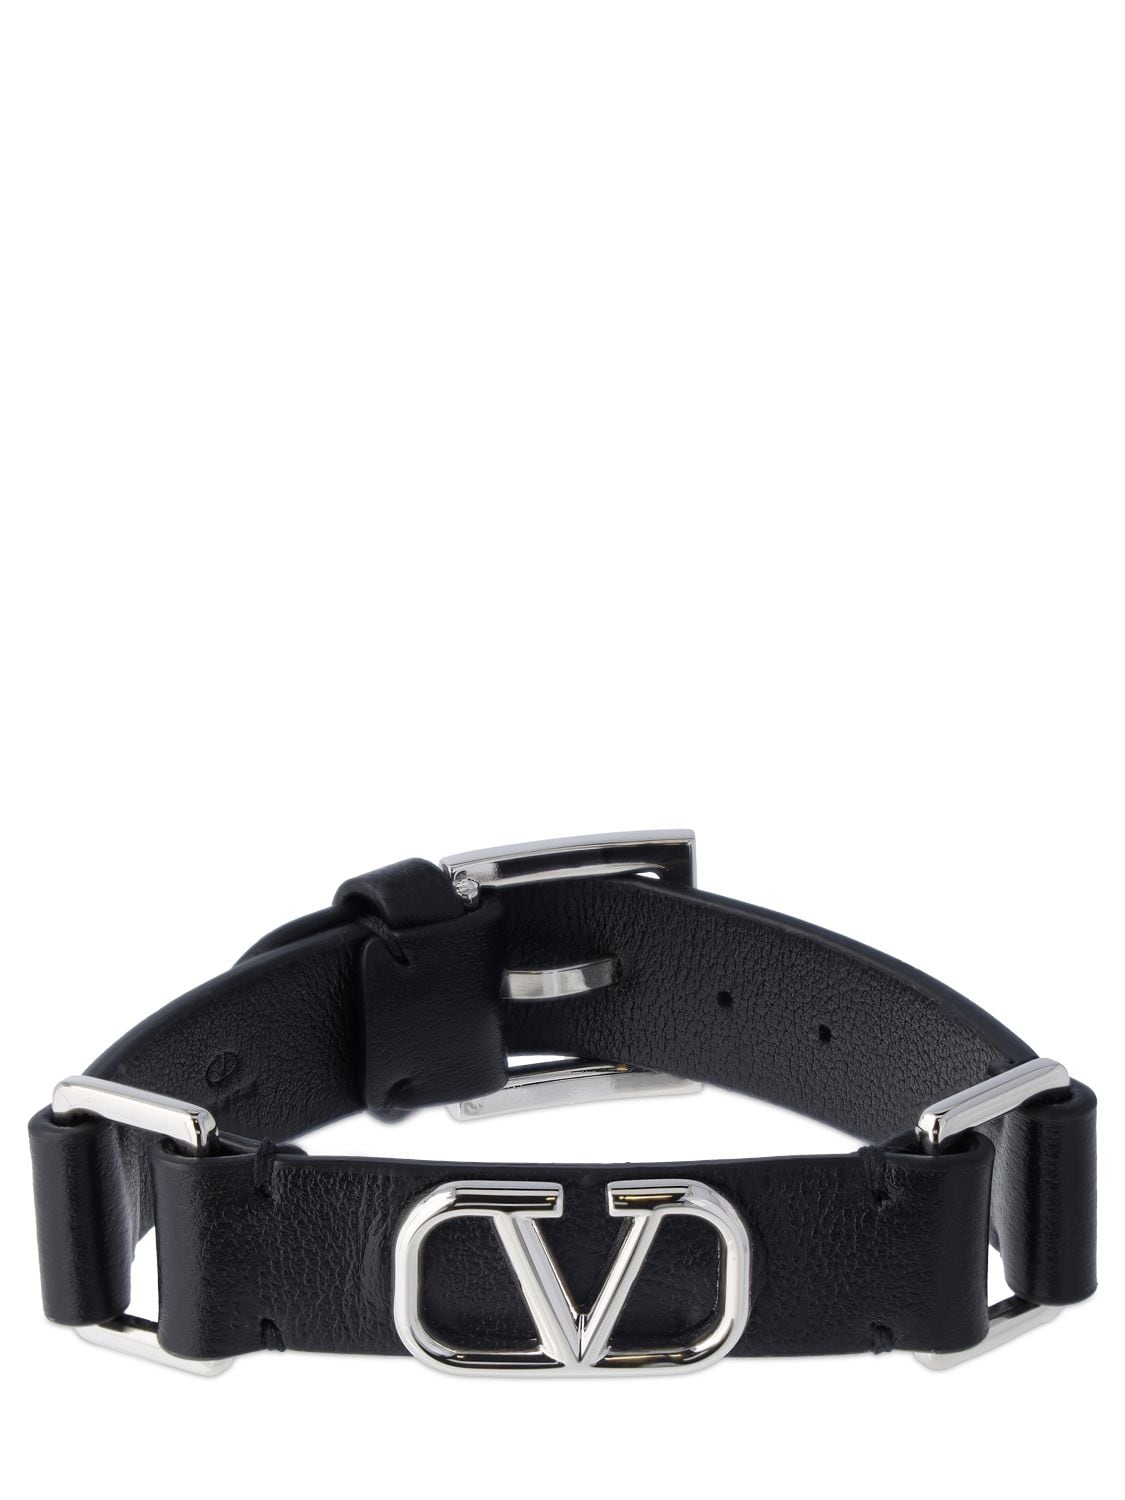 Valentino Garavani V Logo Signature皮革手链 In Black,silver